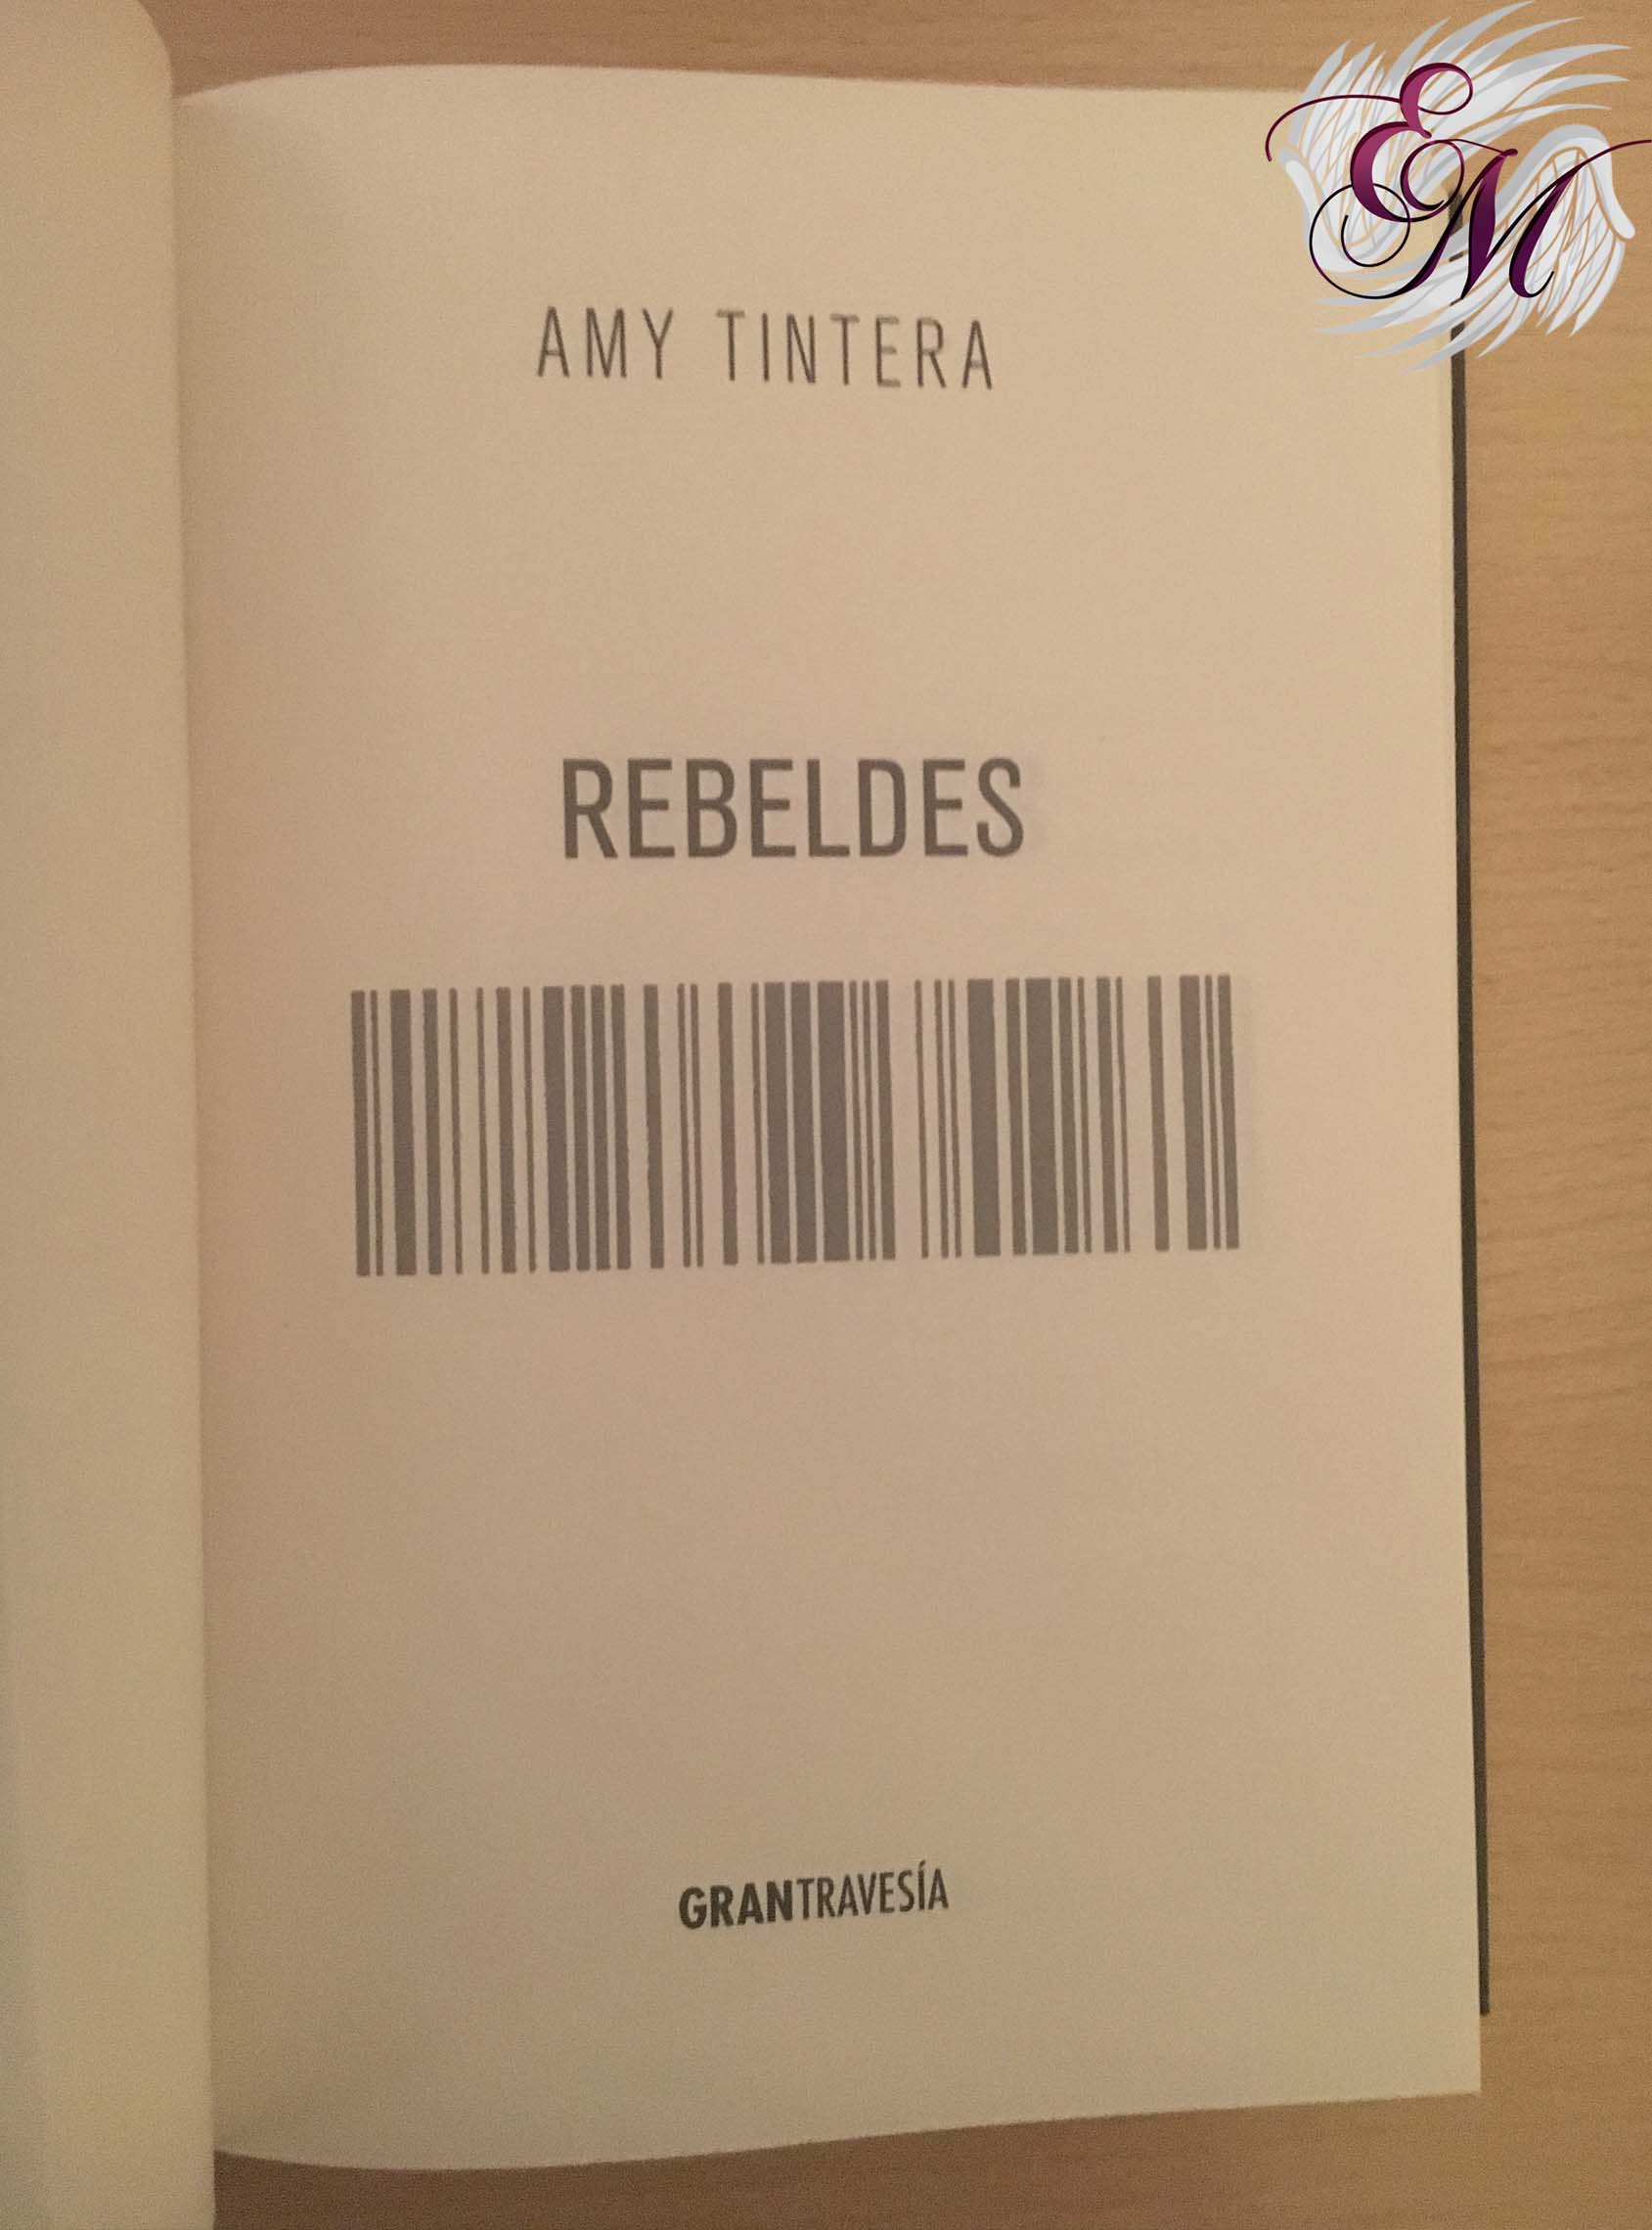 Rebeldes, de Amy Tintera - Reseña